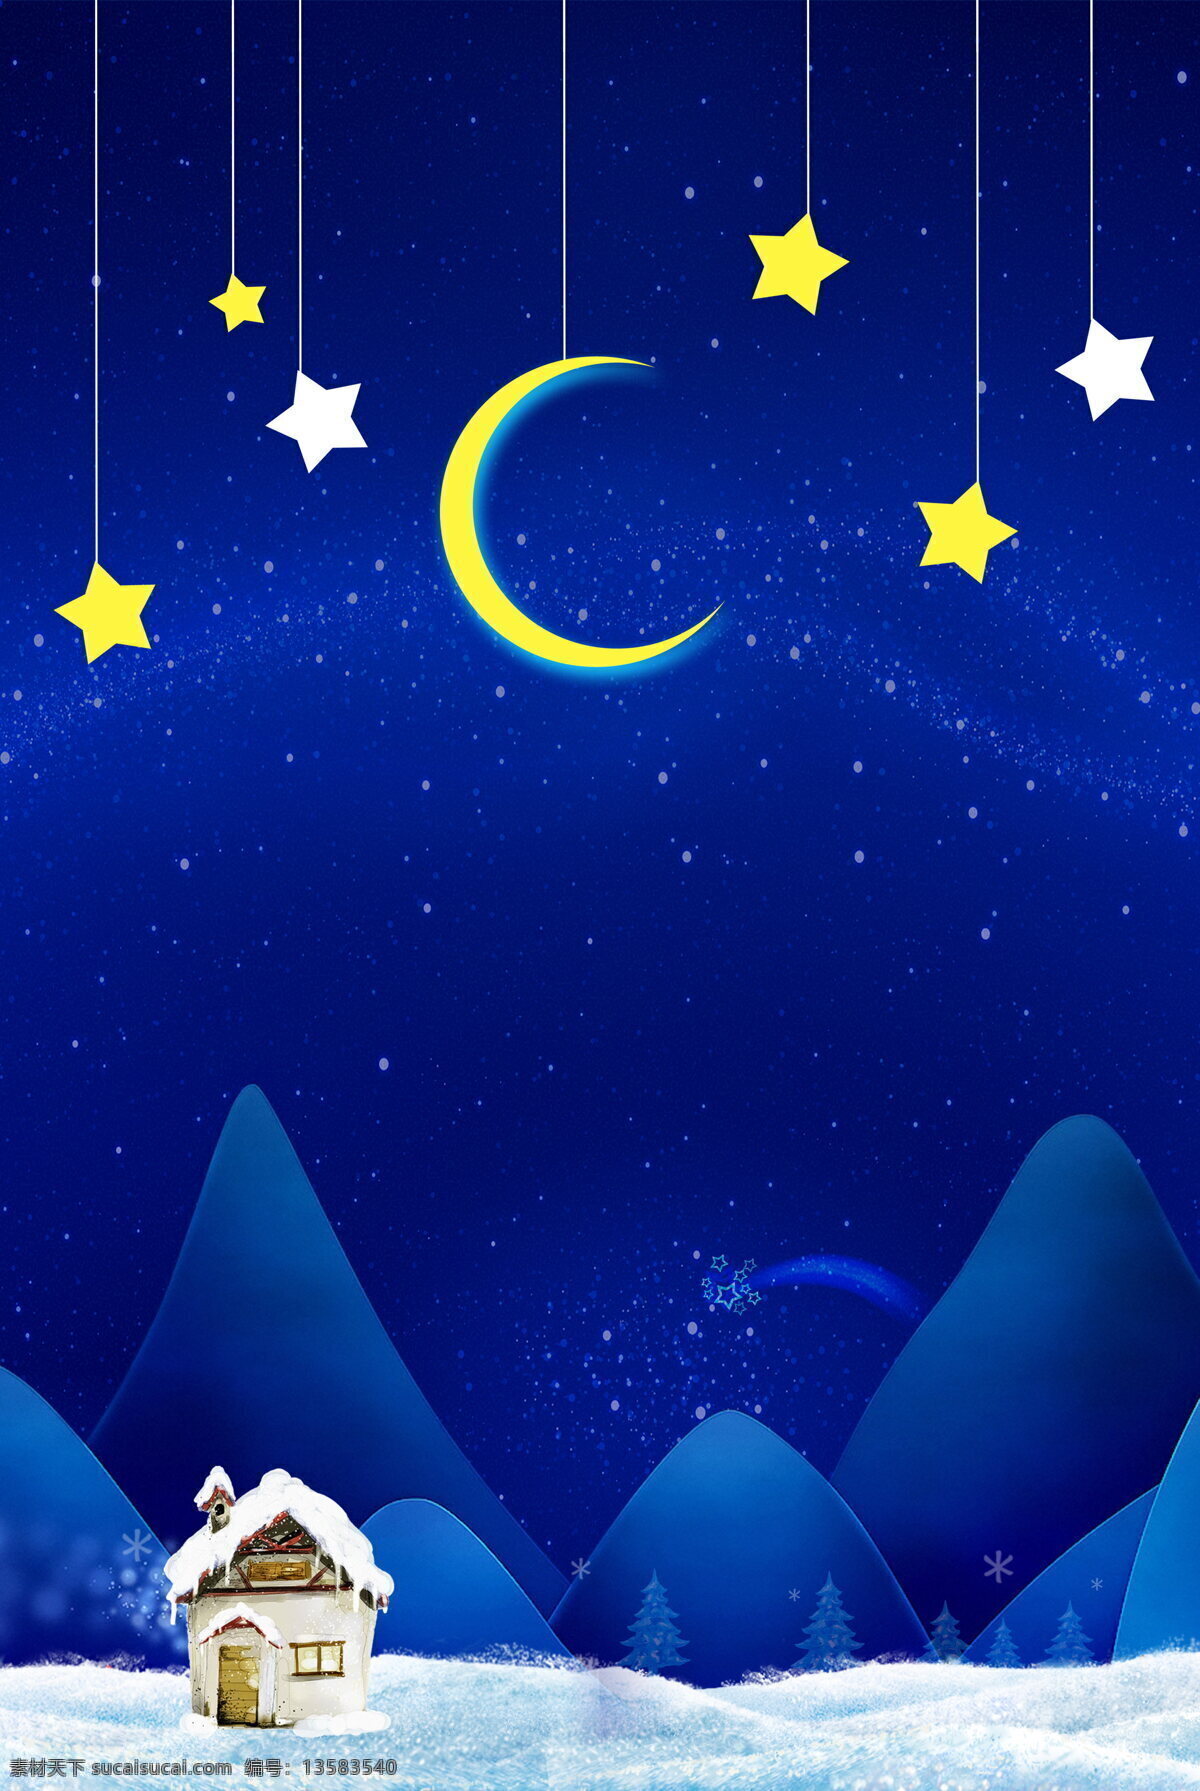 唯美 蓝色 卡通 圣诞 背景 圣诞节 星星 月亮 手绘 扁平 房子 雪地 树木